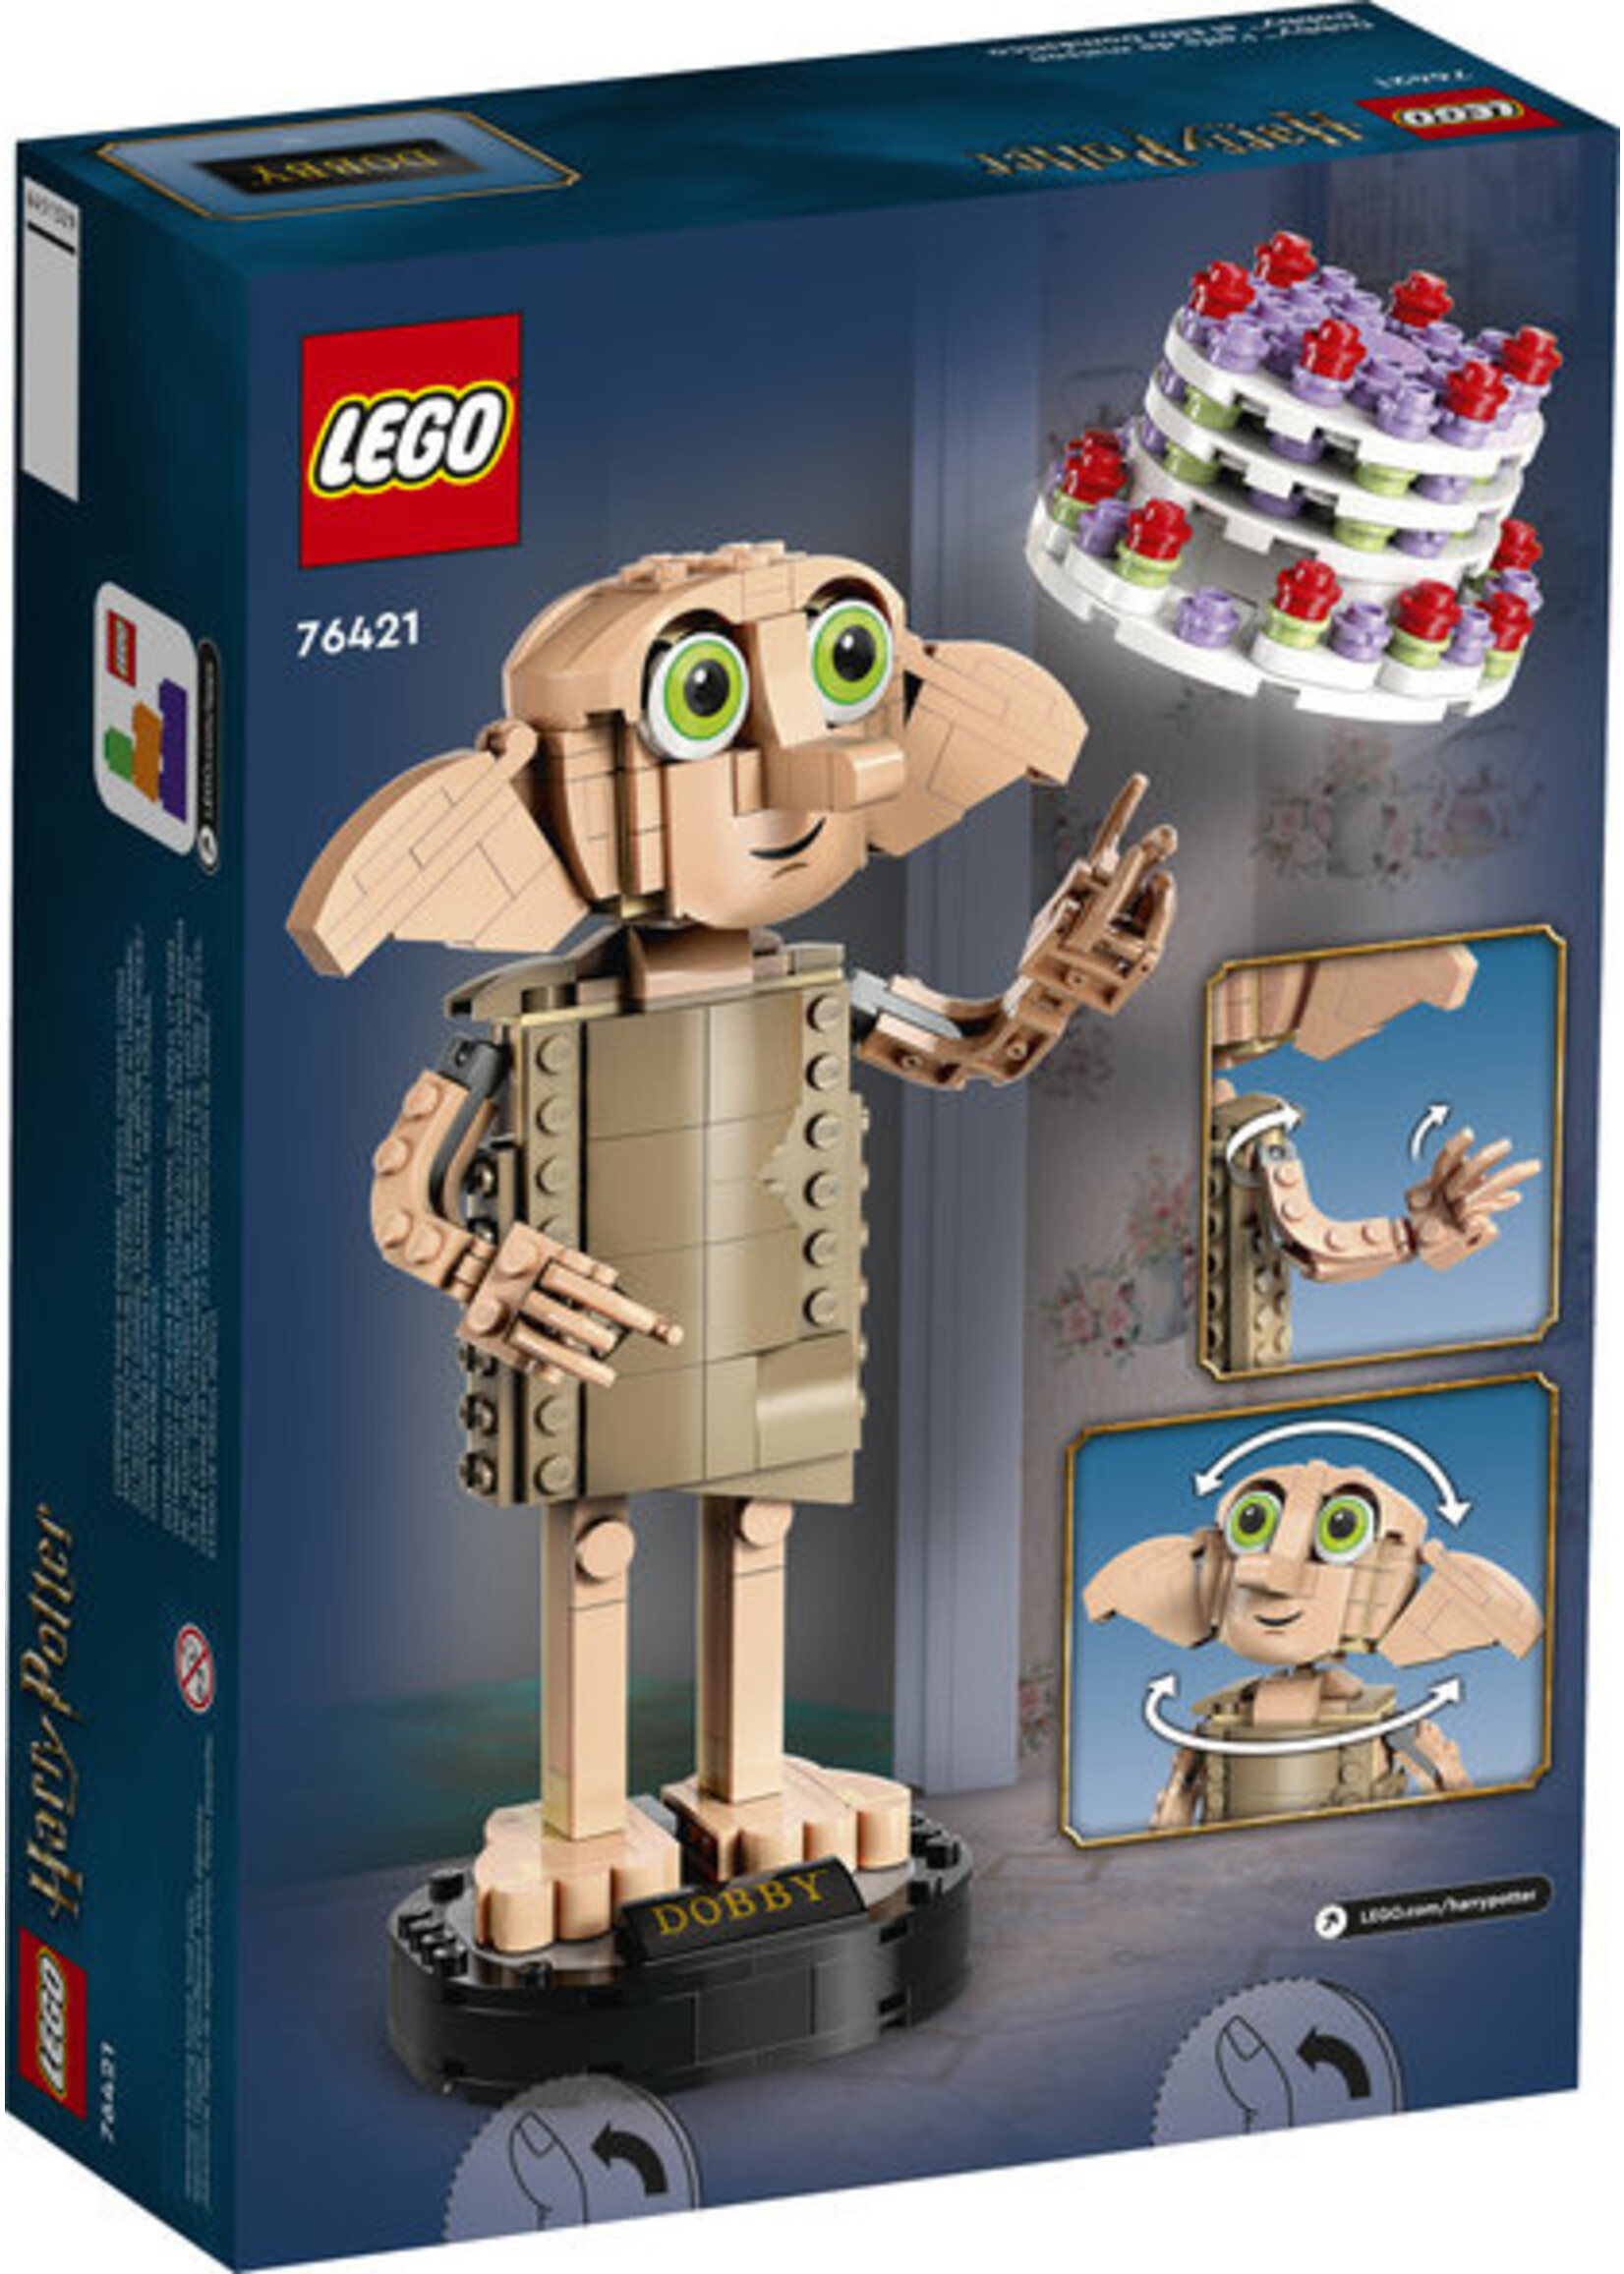 LEGO 76421 - Dobby The House Elf